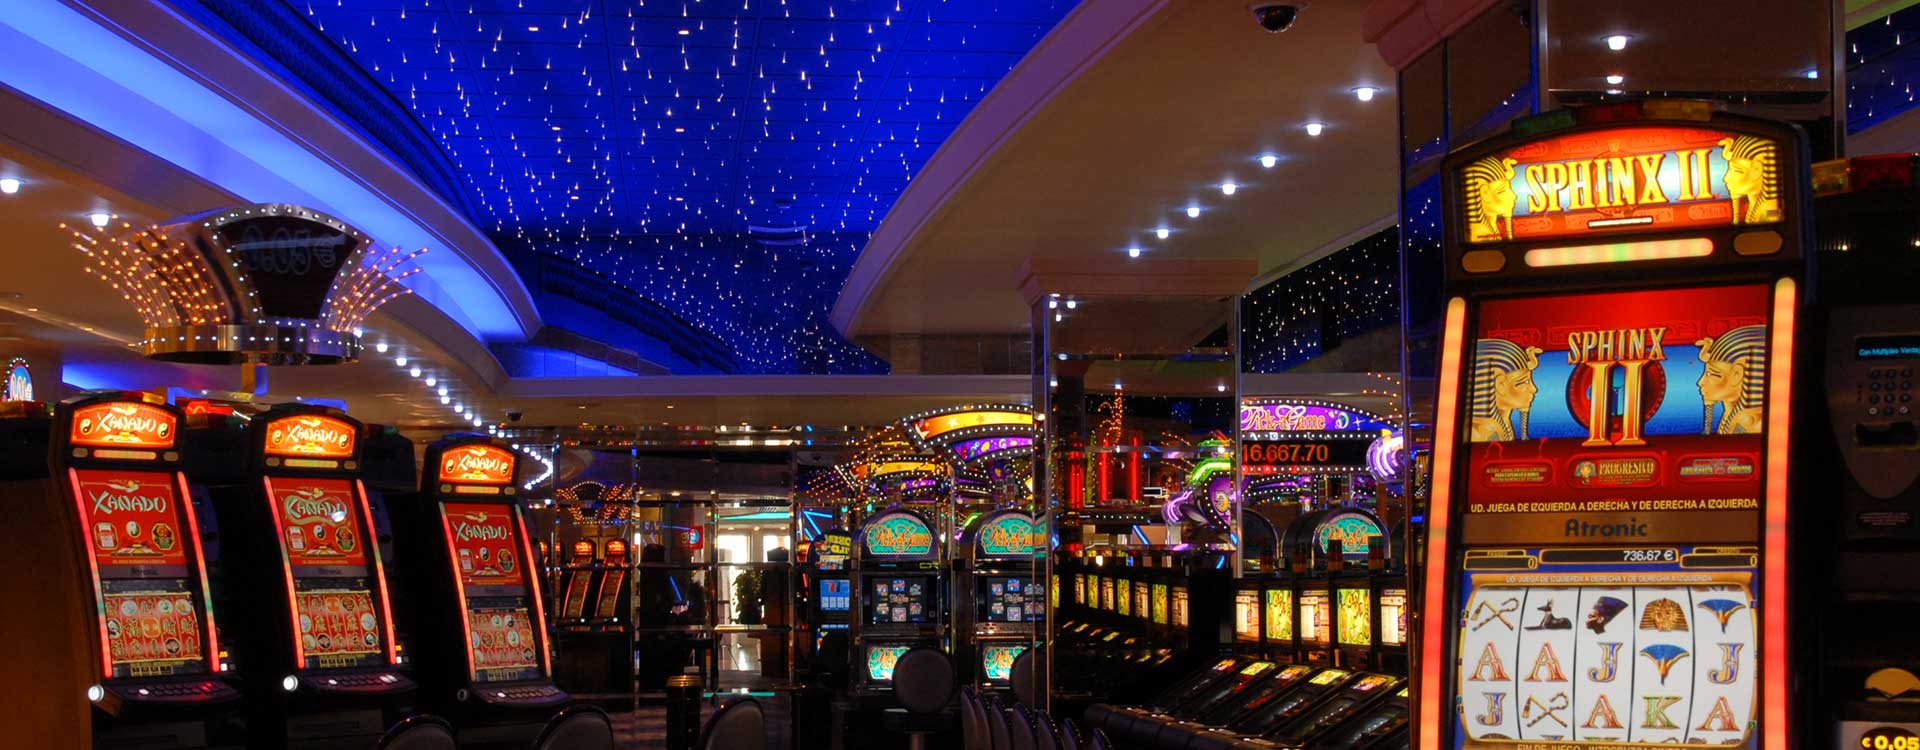 fiber optic lighting in the gran casino al jarafe